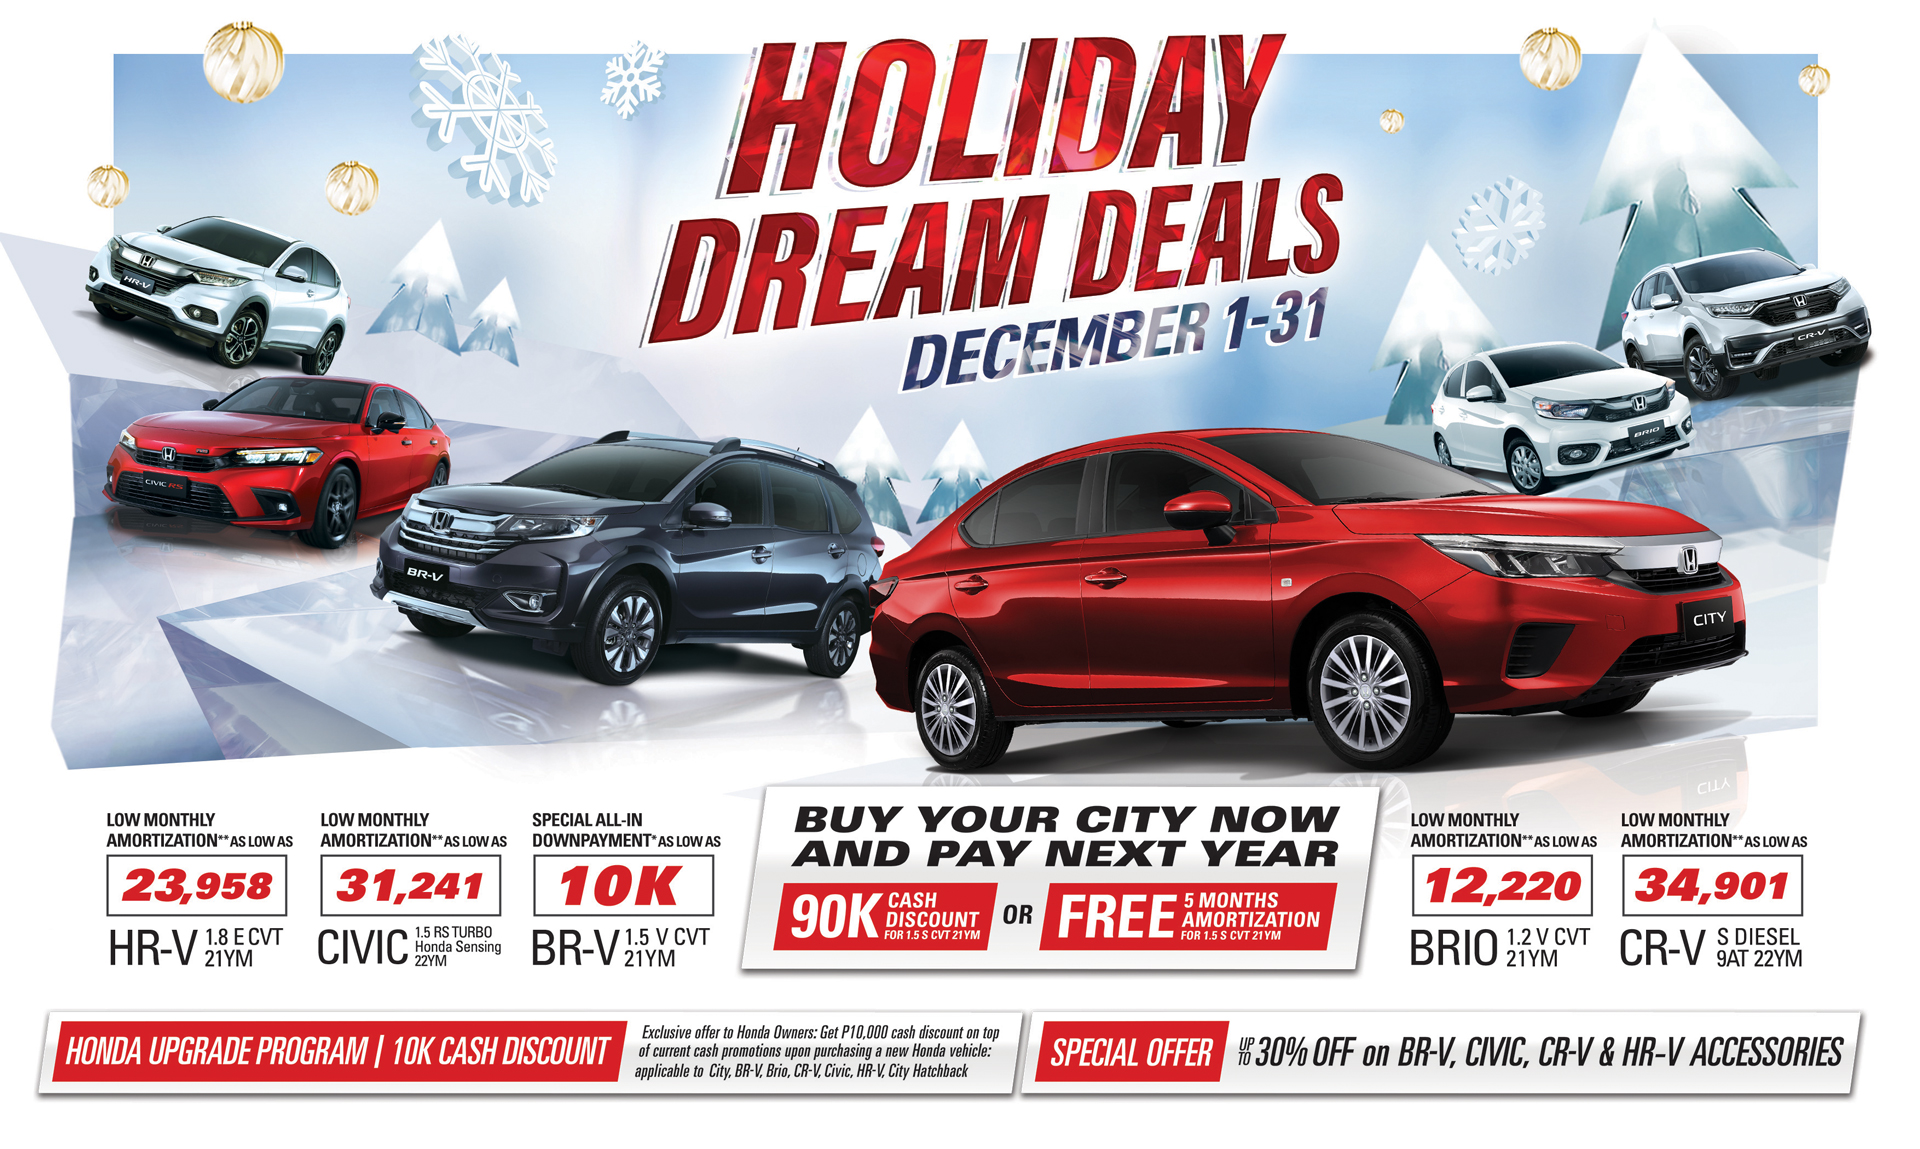 Honda Offers "Holiday Dream Deals" Promo Motortech.ph